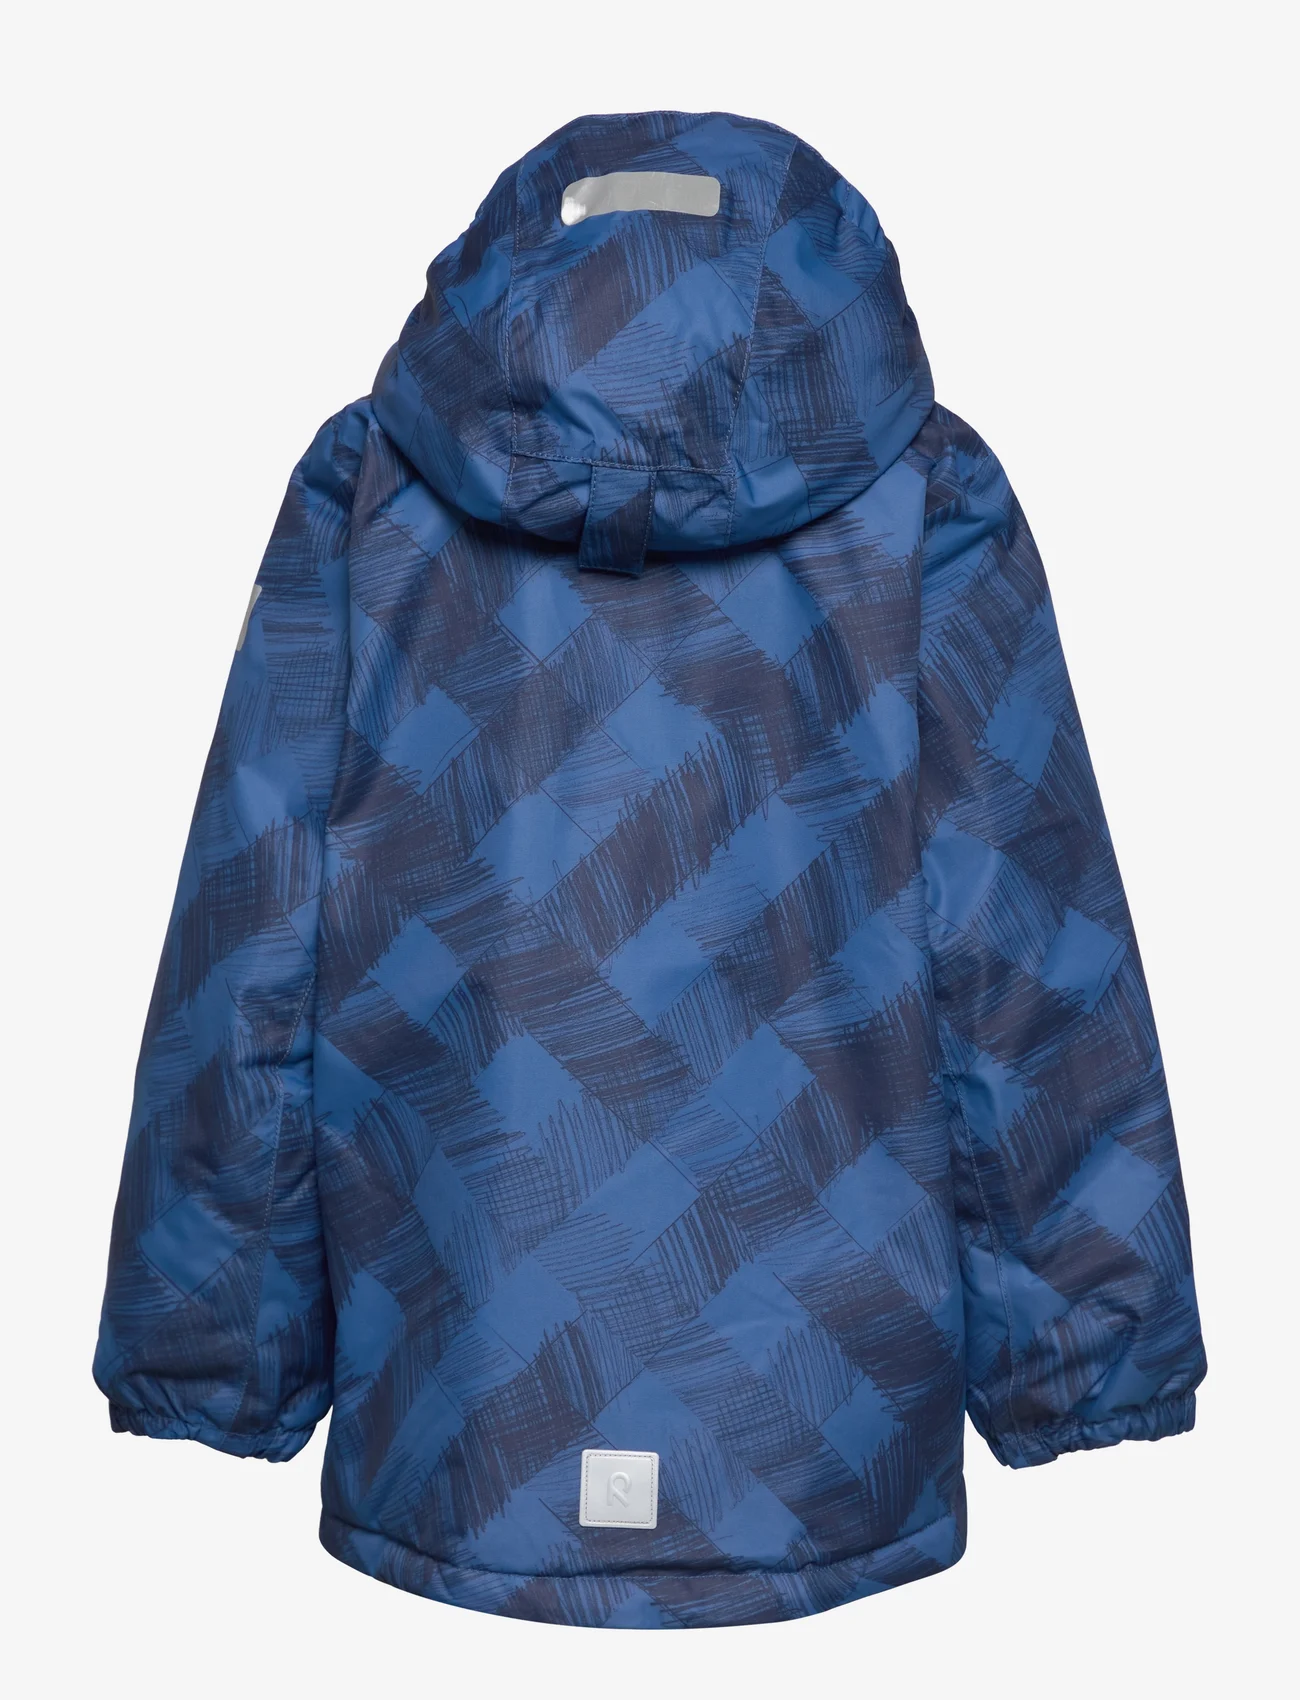 Reima - Winter jacket, Nuotio - talvitakit - soft navy - 1